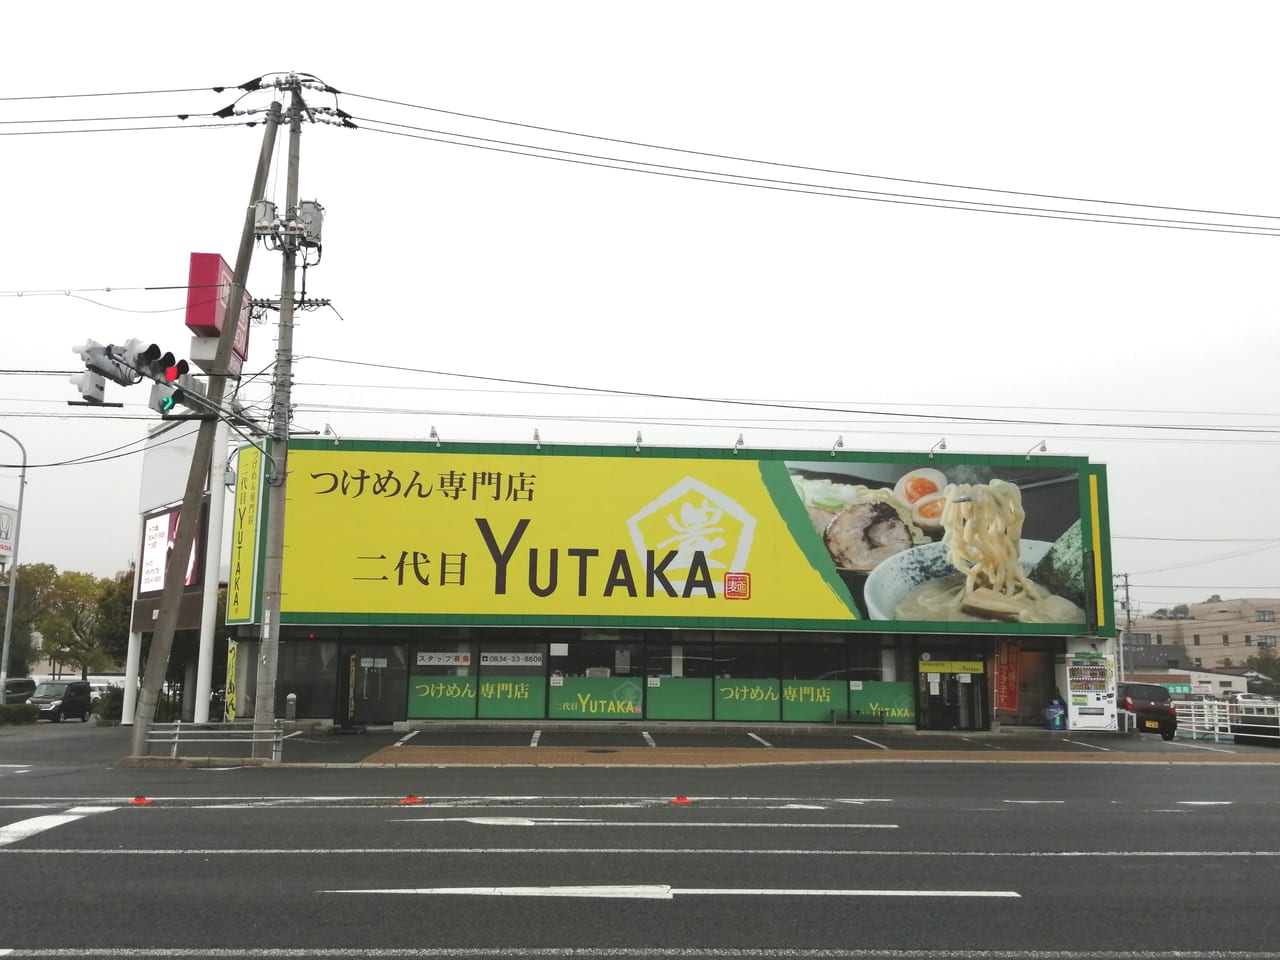 つけ麺2代目YUTAKA